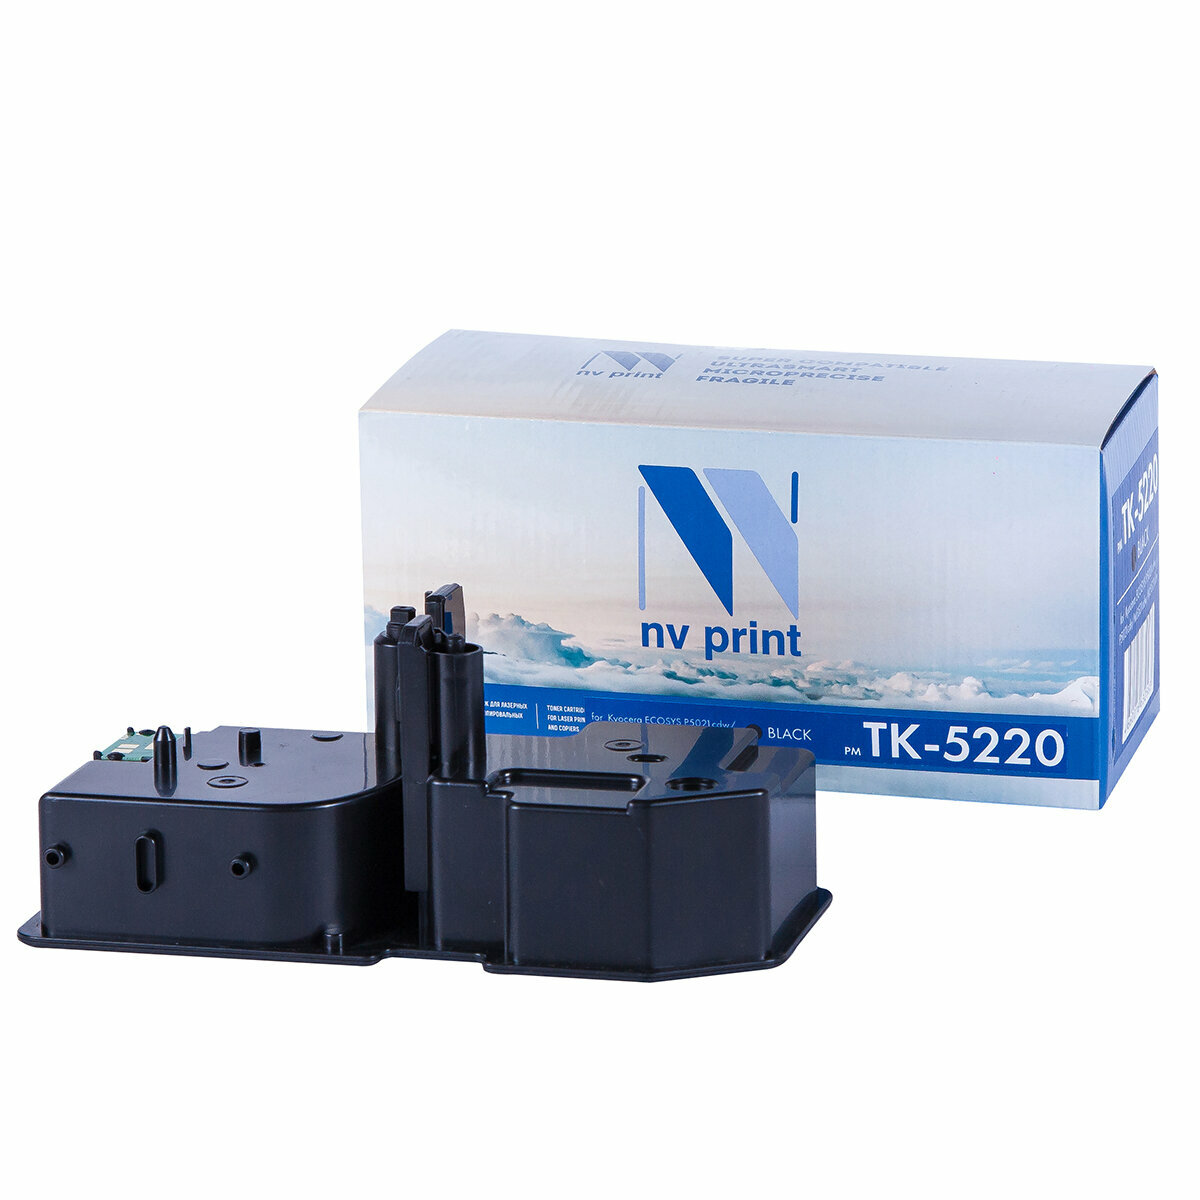 Картридж для принтера NV Print NV-TK-5220 Black, для Kyocera Ecosys M5521cdn/ M5521cdw/ P5021cdn/ P5021cdw, совместимый